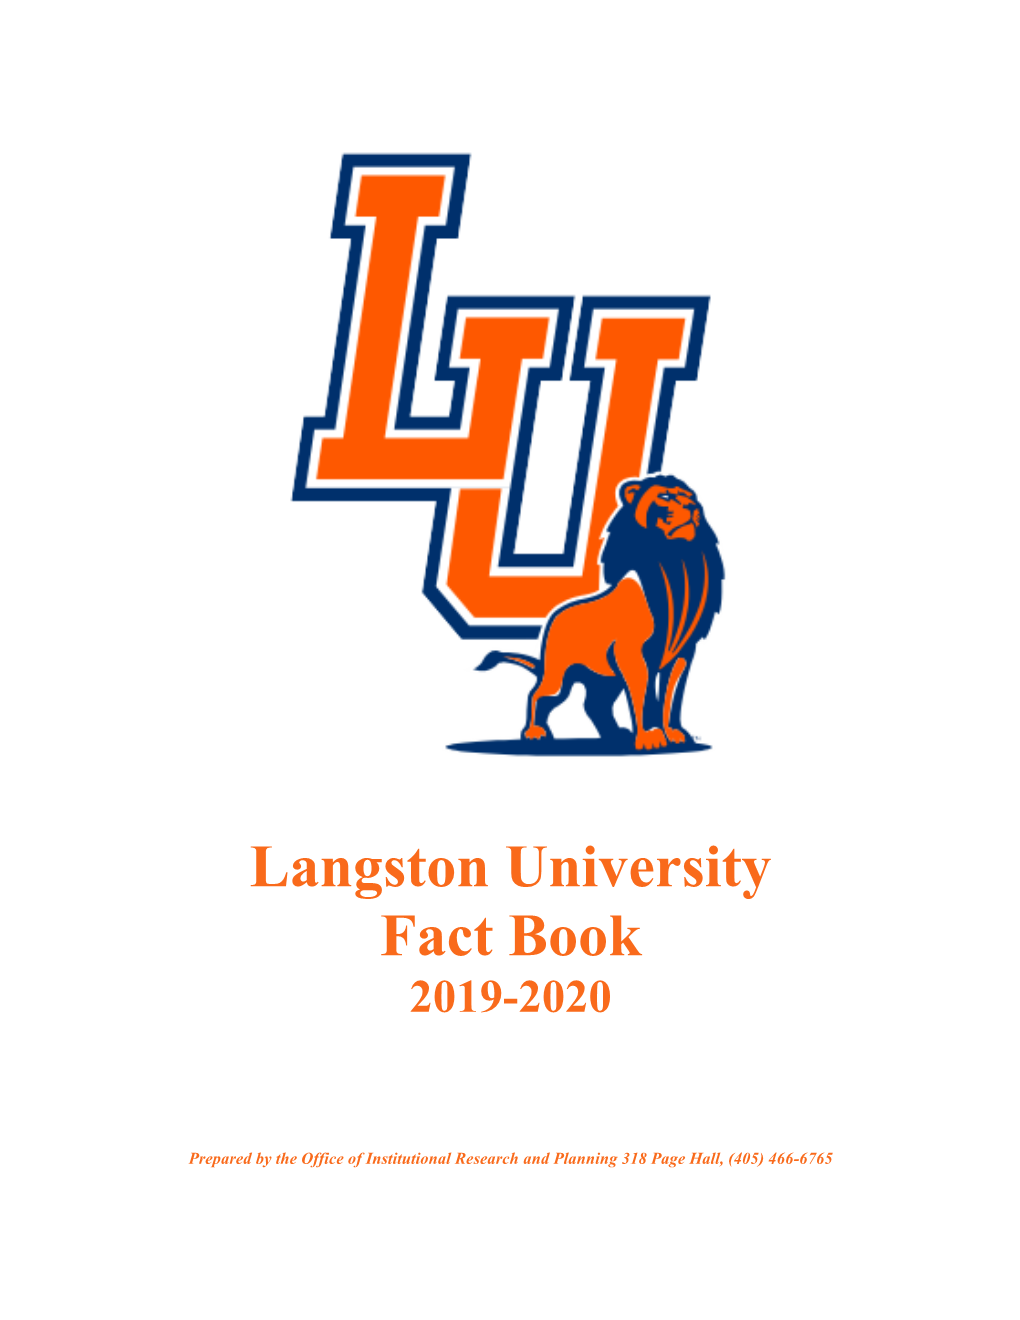 Langston University Fact Book 2019-2020